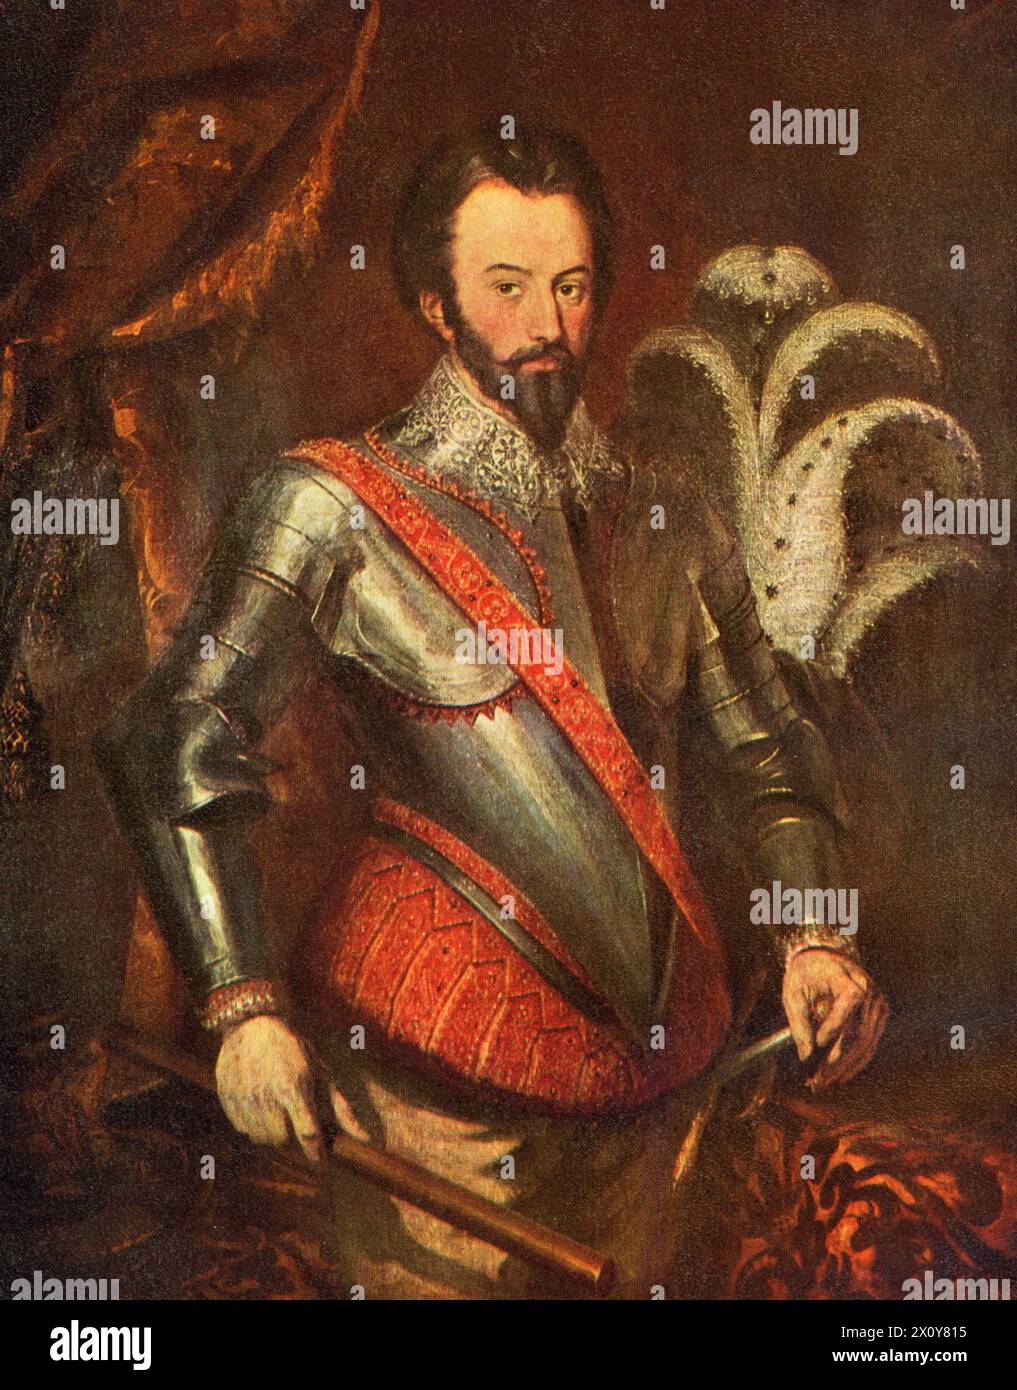 Sir Walter Raleigh (um 1552-1618), 19. Jahrhundert. Von Herbert Luther Smith (1809–1870). Raleigh war ein englischer Staatsmann, Soldat, Schriftsteller und Entdecker. Stockfoto